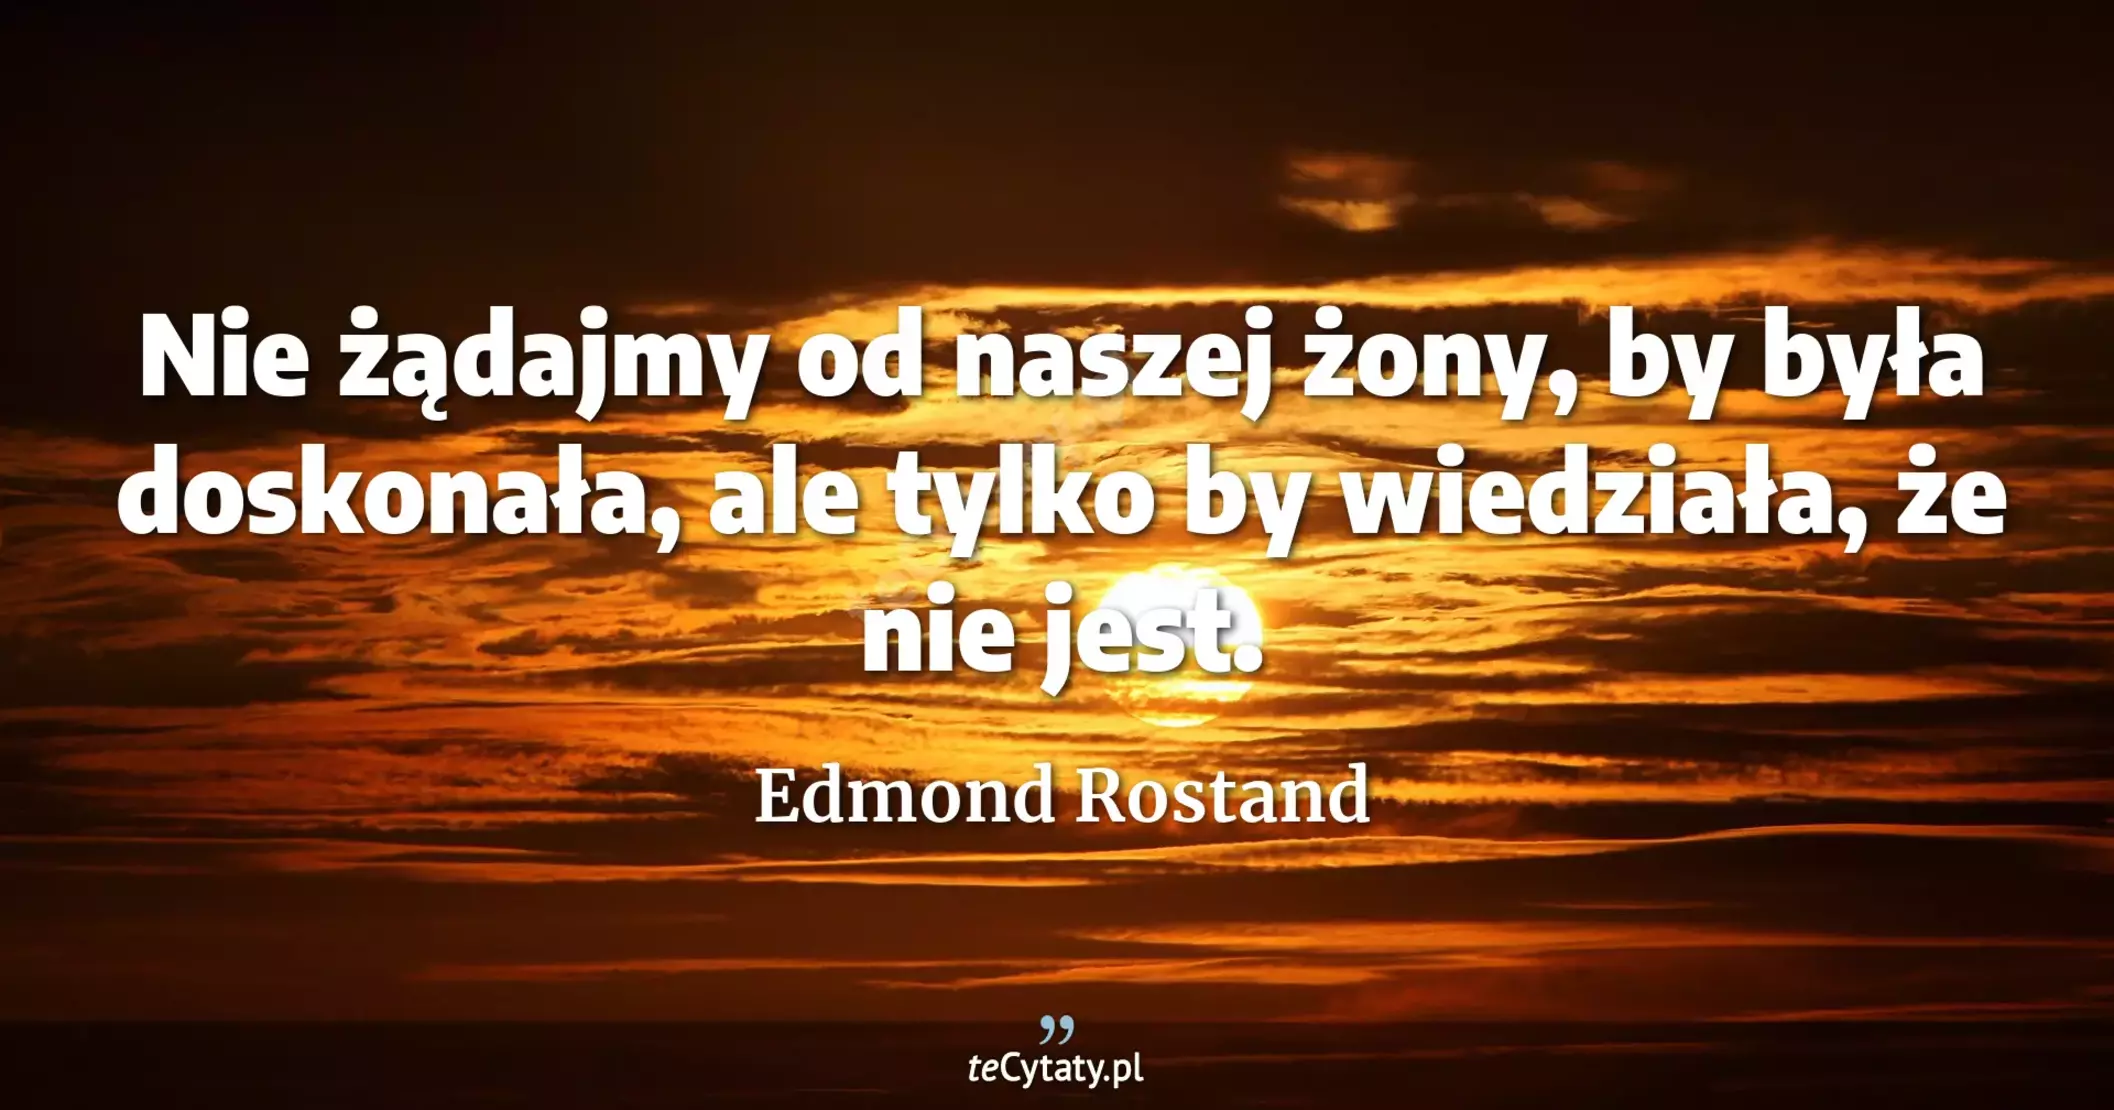 Nie żądajmy od naszej żony, by była doskonała, ale tylko by wiedziała, że nie jest. - Edmond Rostand